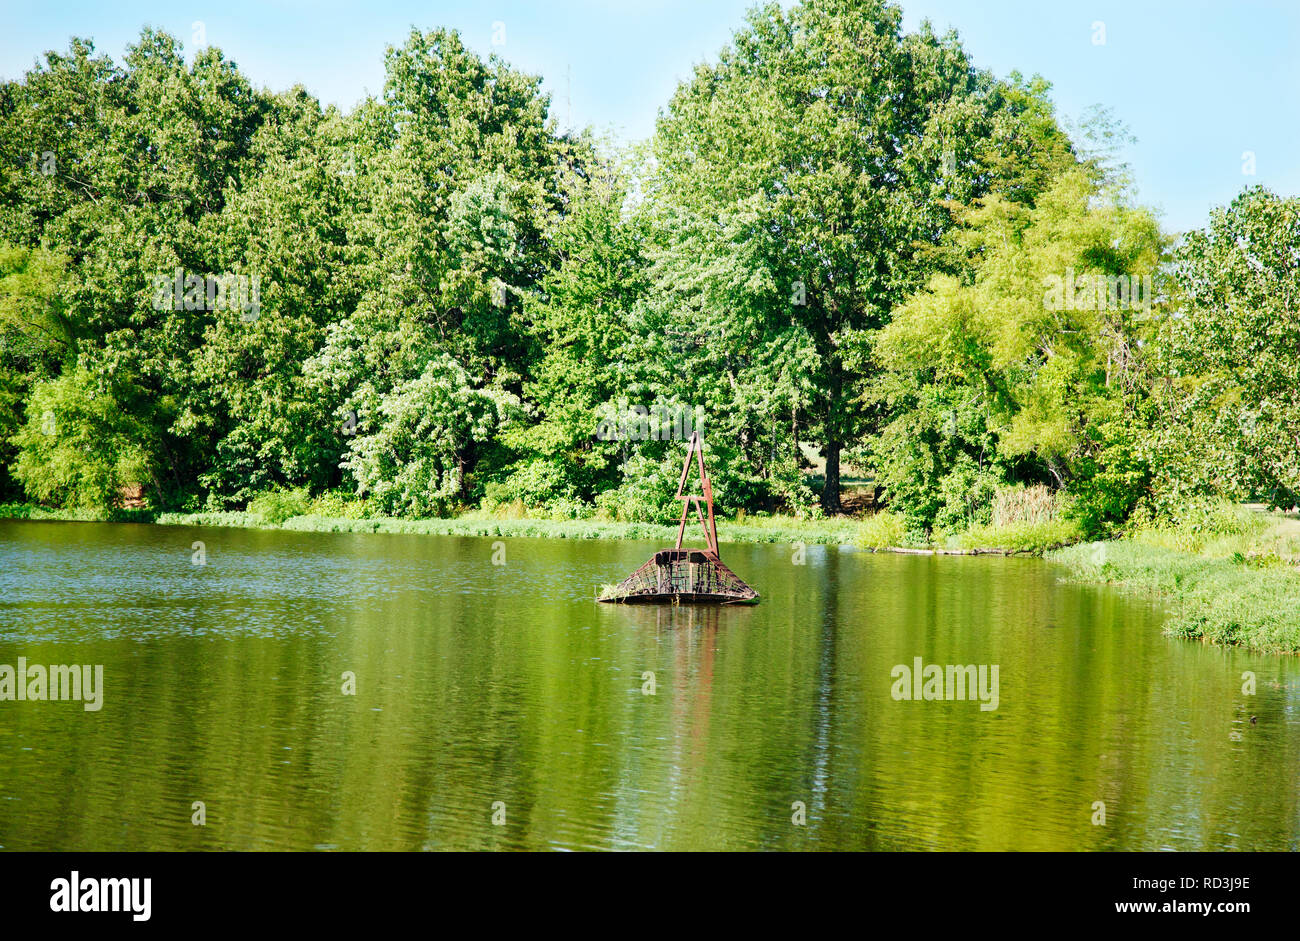 Treelined lake in the summer, Shreveport, Louisiana, United States Stock Photo